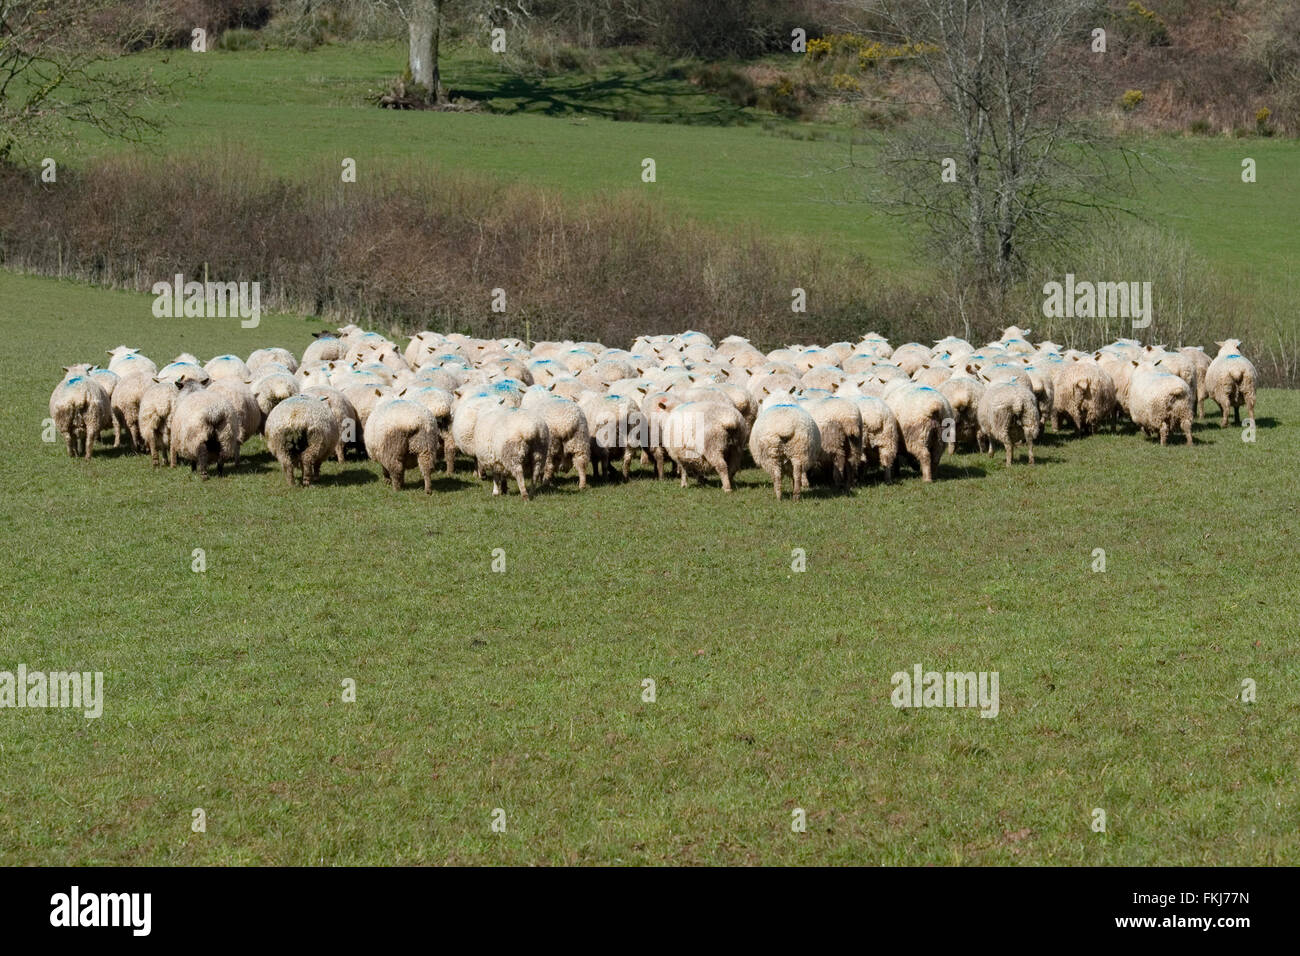 sheep running away Stock Photo